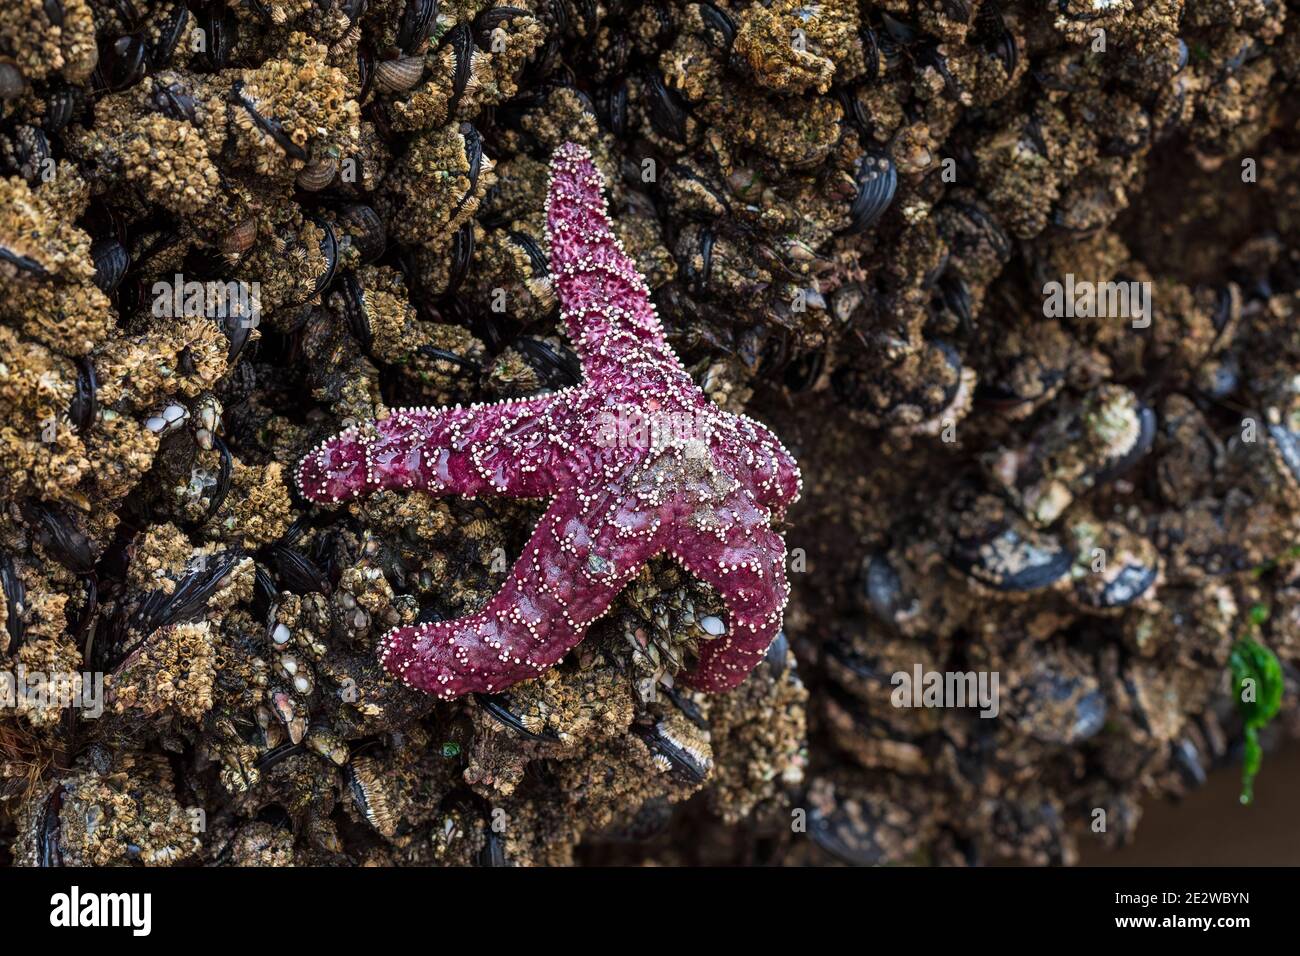 Purple Ocher Sea Star (Pisaster ochraceus) oder Ocher Starfish in der Gezeitenzone am Cape Kiwanda an der Küste von Oregon Stockfoto